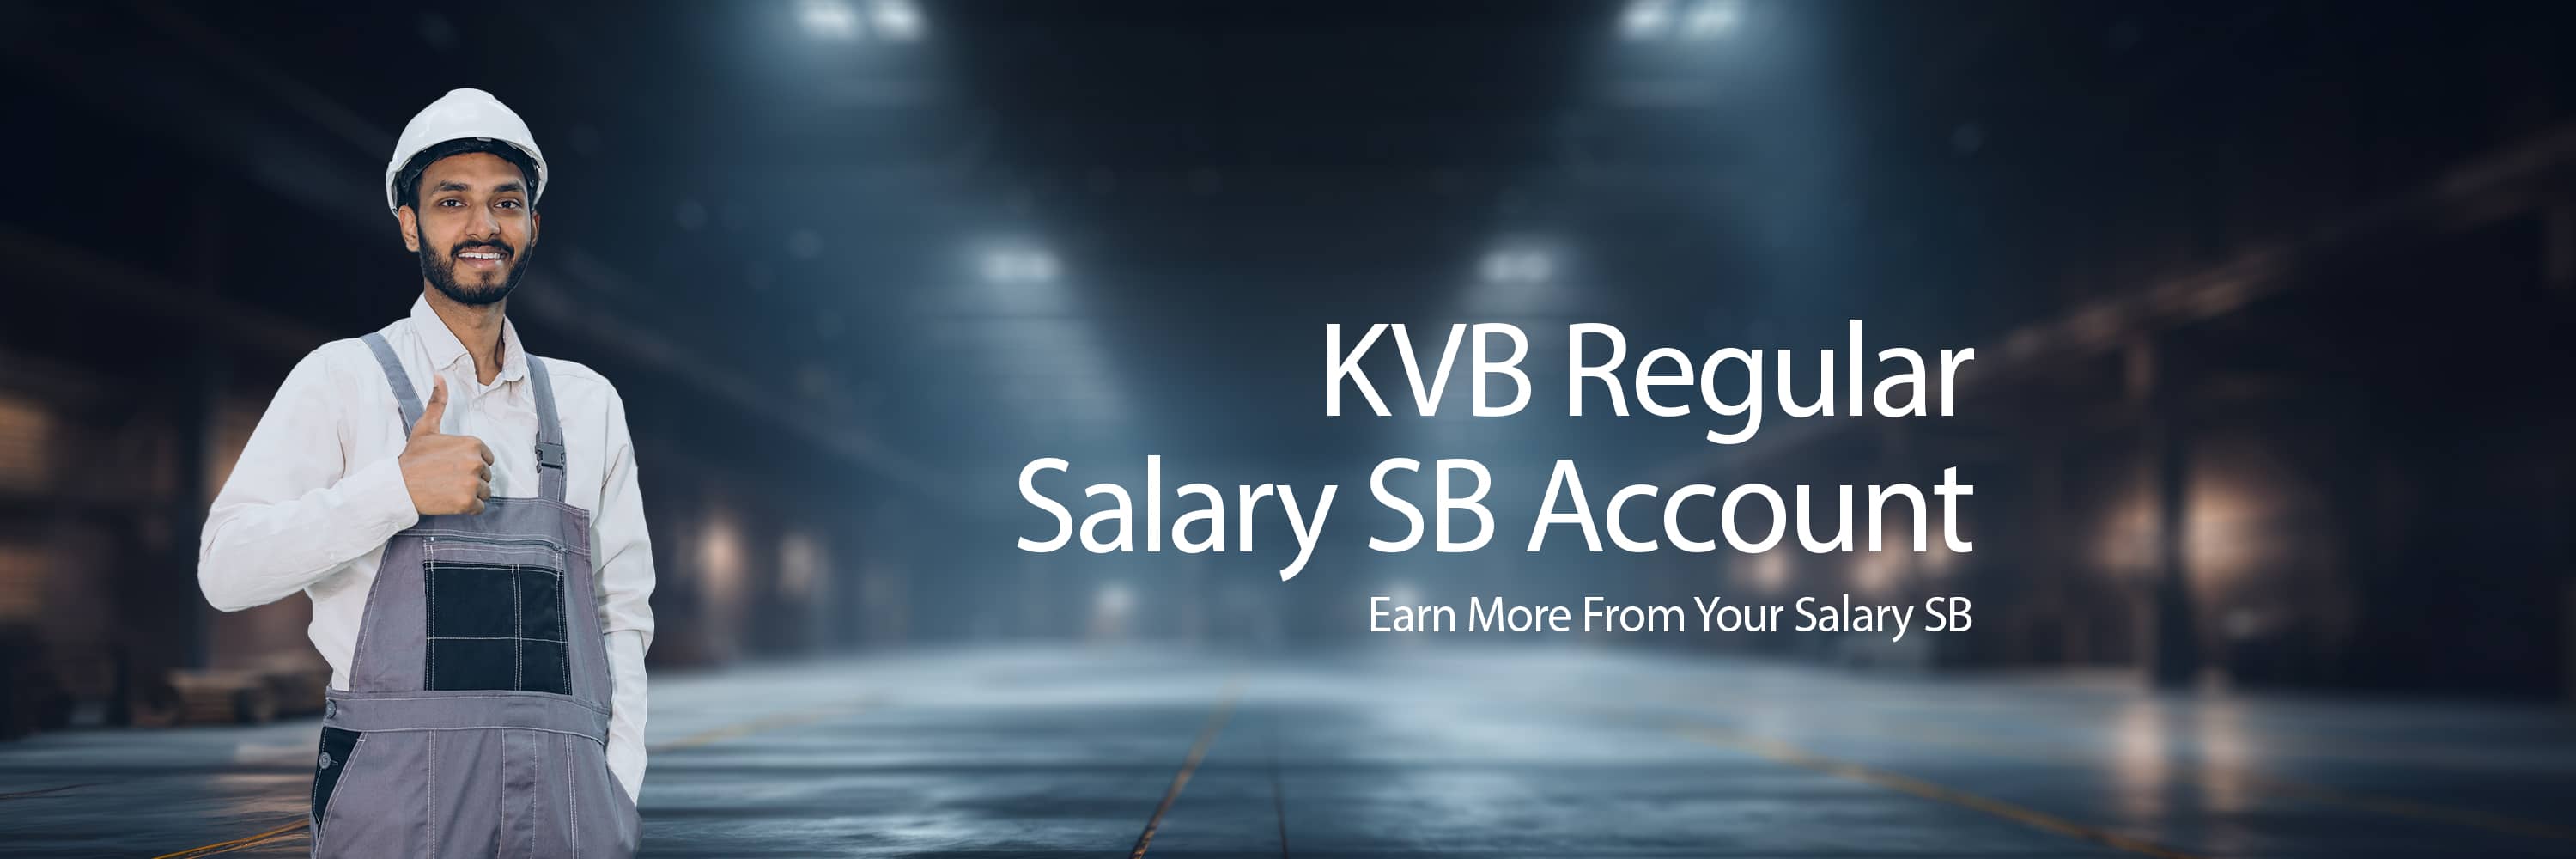 KVB Regular Salary SB Account